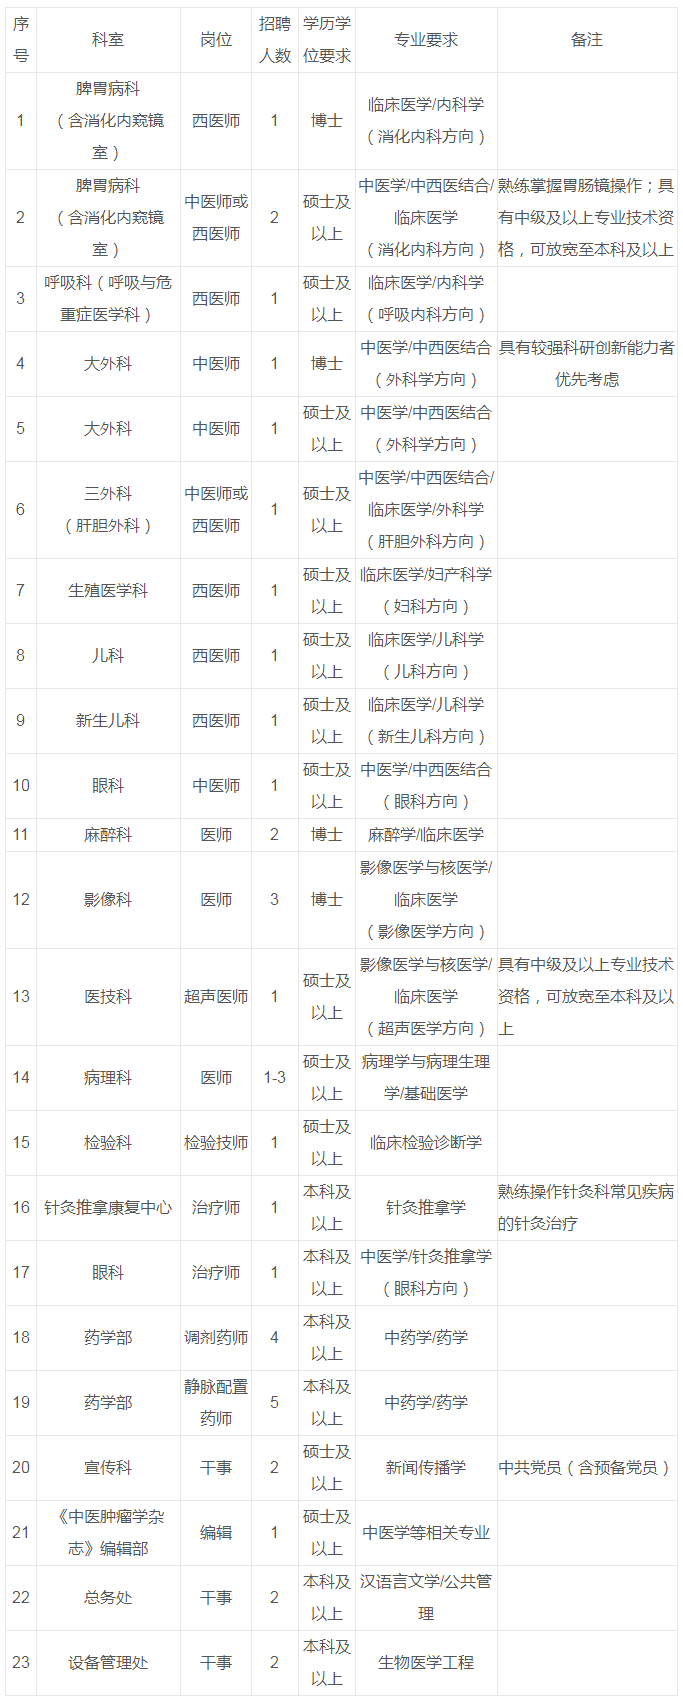 广州中医药大学第一附属医院2023年招聘公告(第三批)(招聘23个职位37人)_考试公告_公考雷达.png